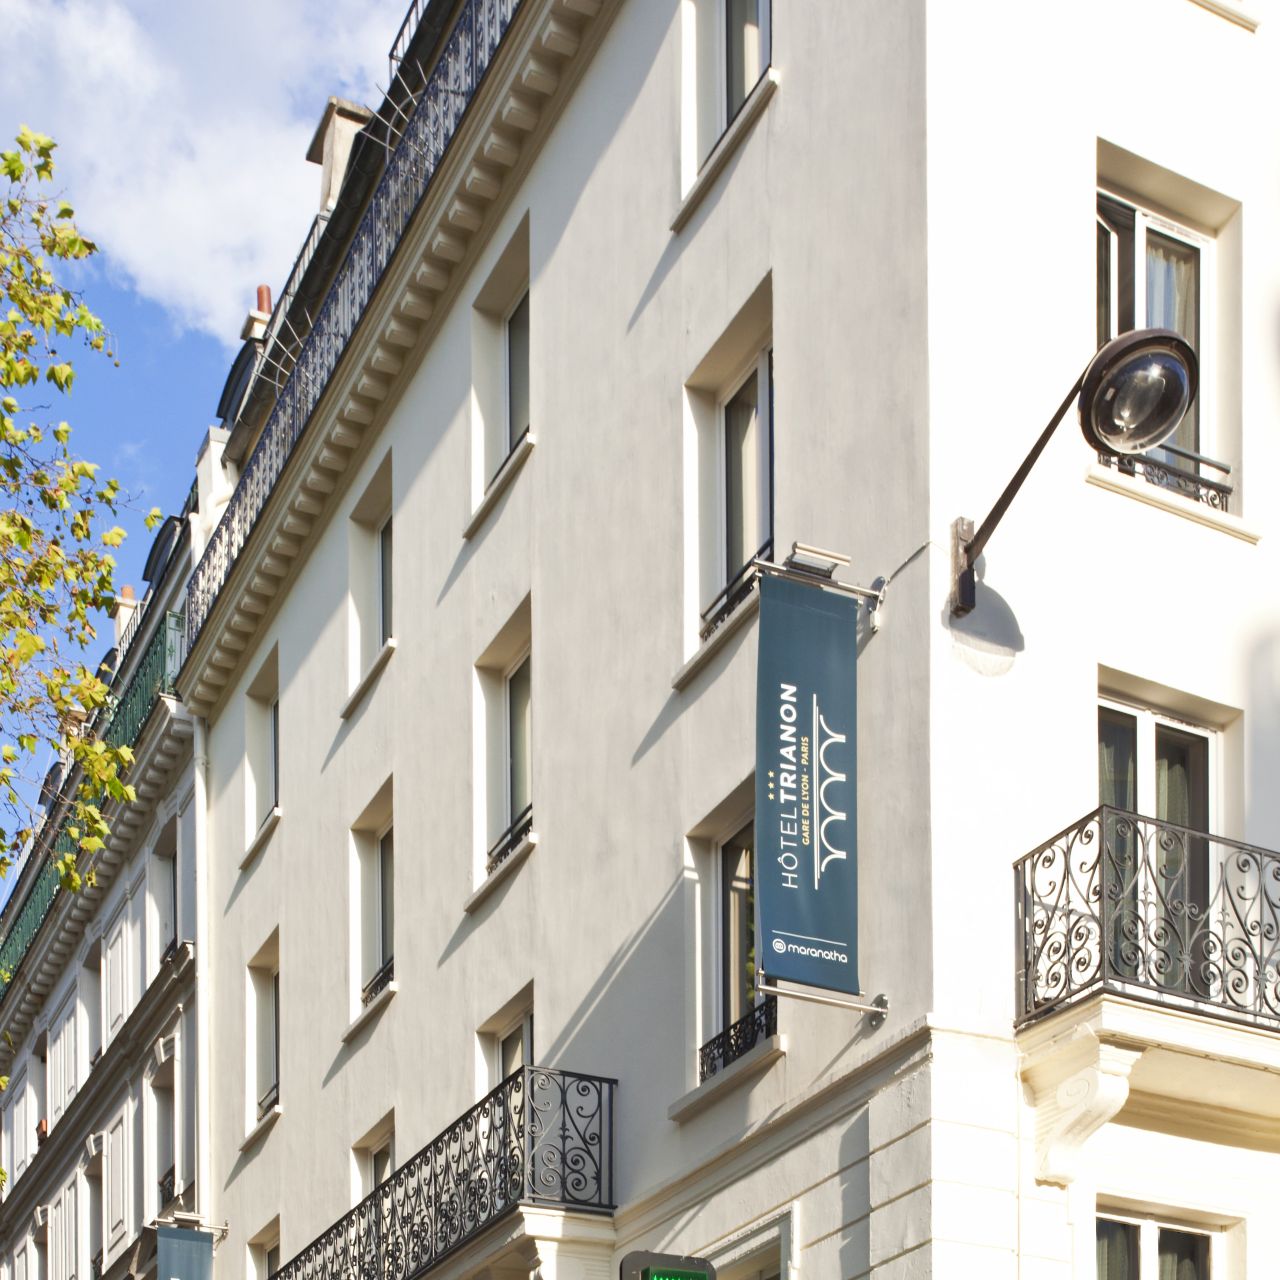 Hotel Trianon Gare De Lyon - Paris - Great prices at HOTEL INFO